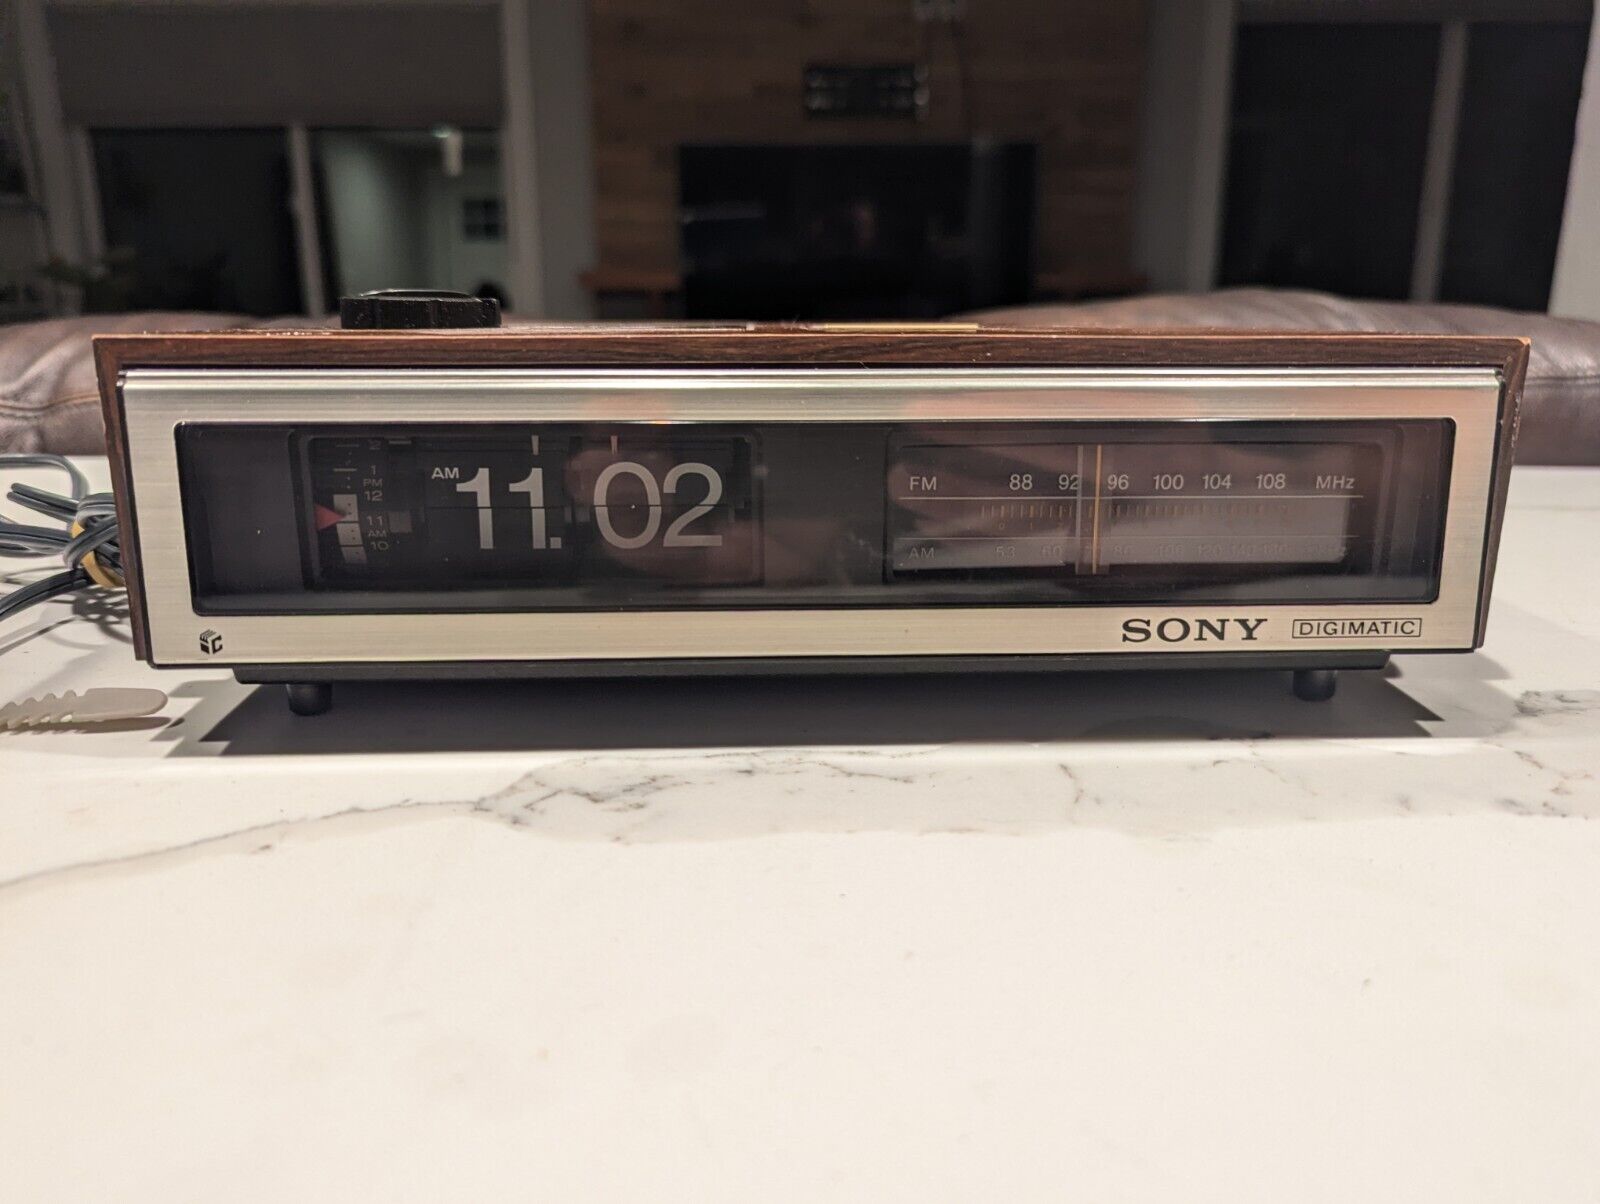 Vintage Sony ICF-C670W Digimatic AM/FM Flip Clock Radio Alarm Woodgrain - Tested